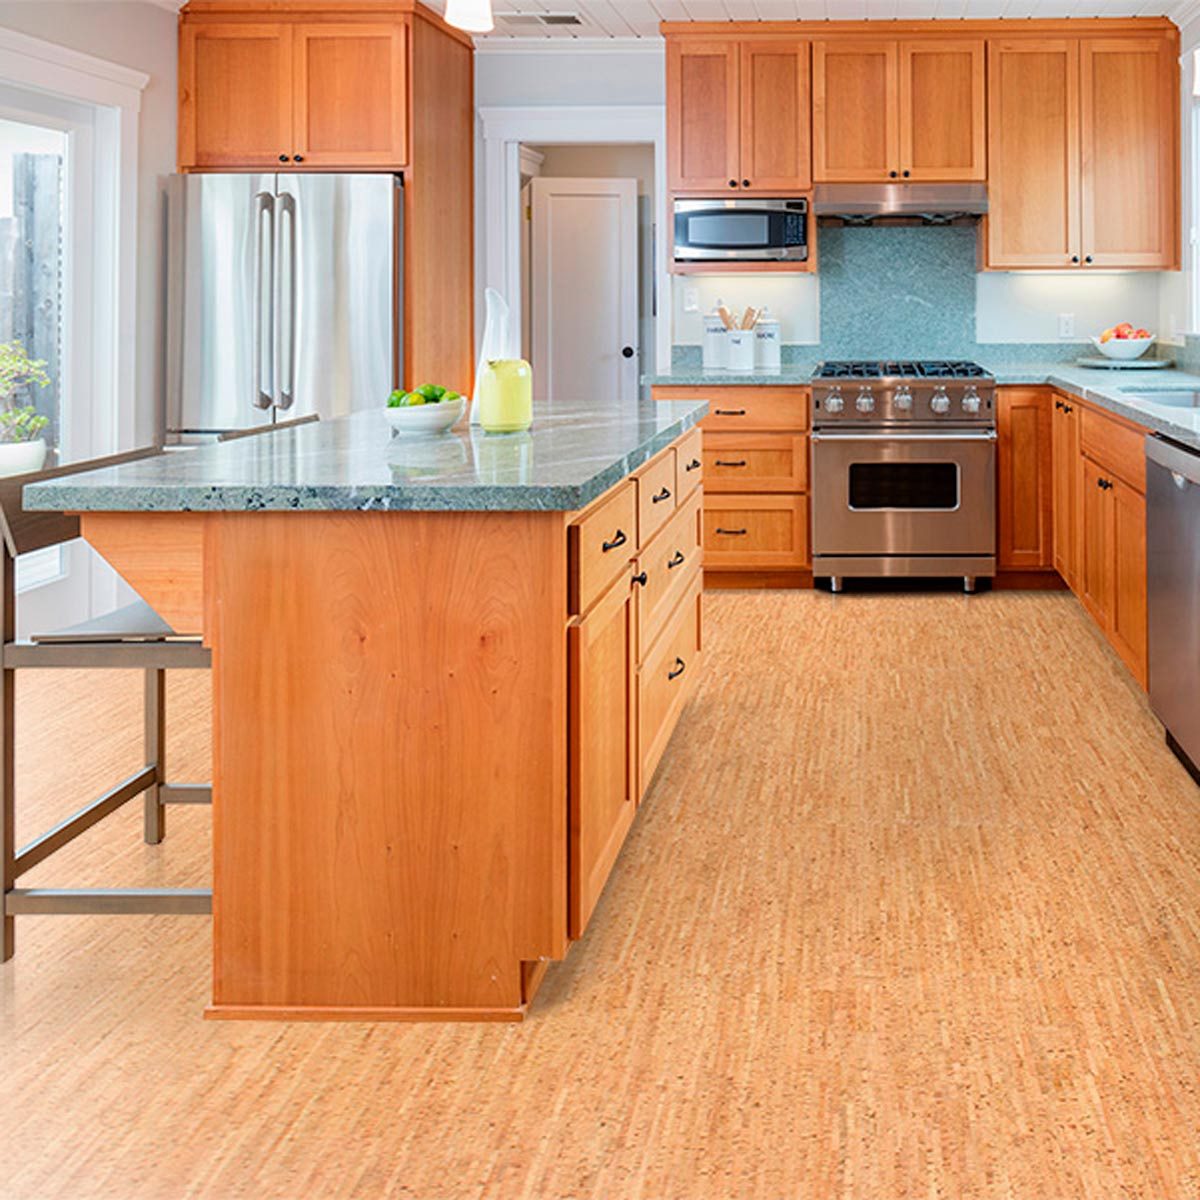 Wood Floor Kitchen Pictures Flooring Tips